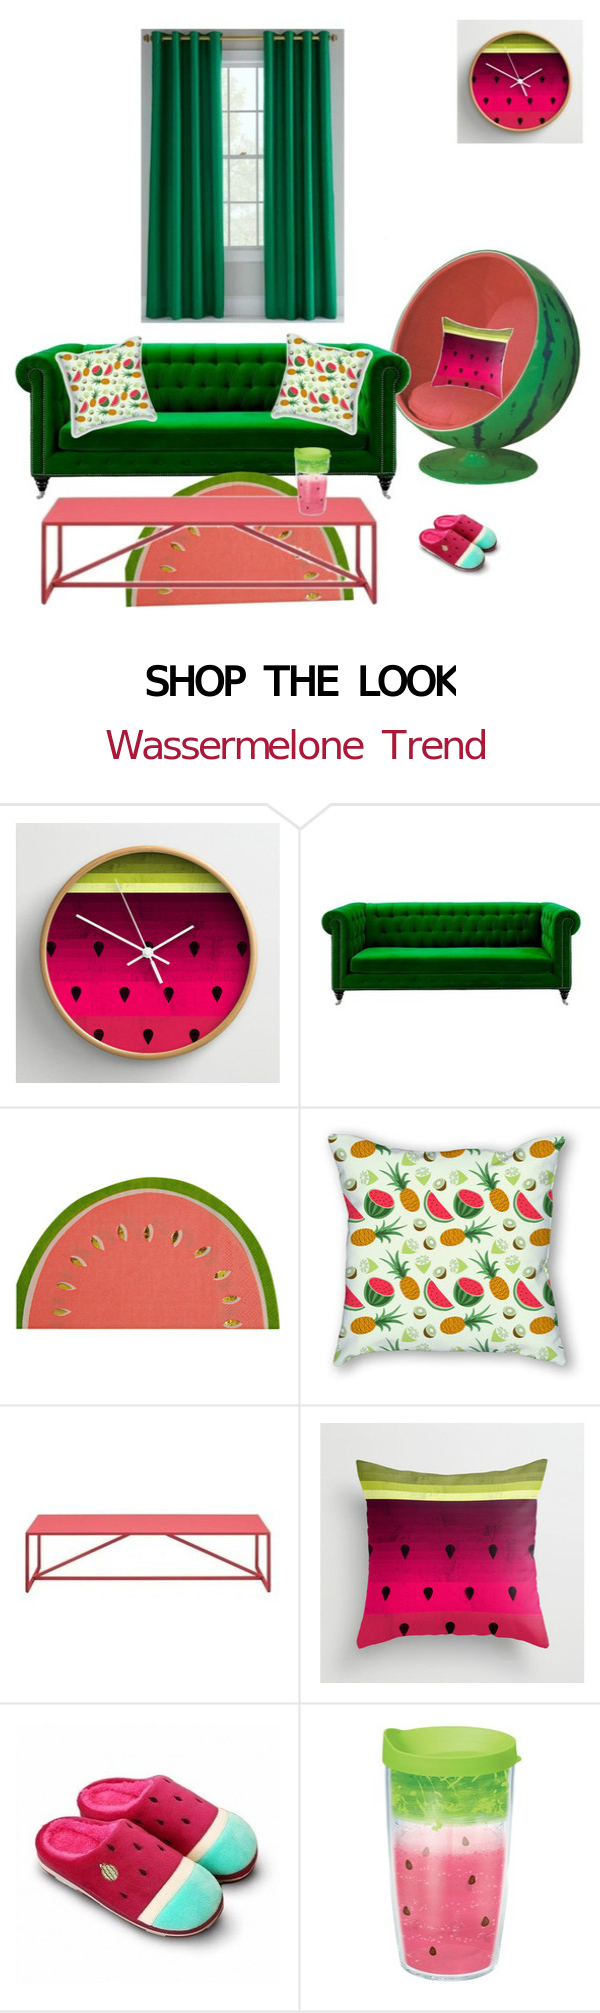 Shop the Look: Wohnungsideen mit Wassermelone